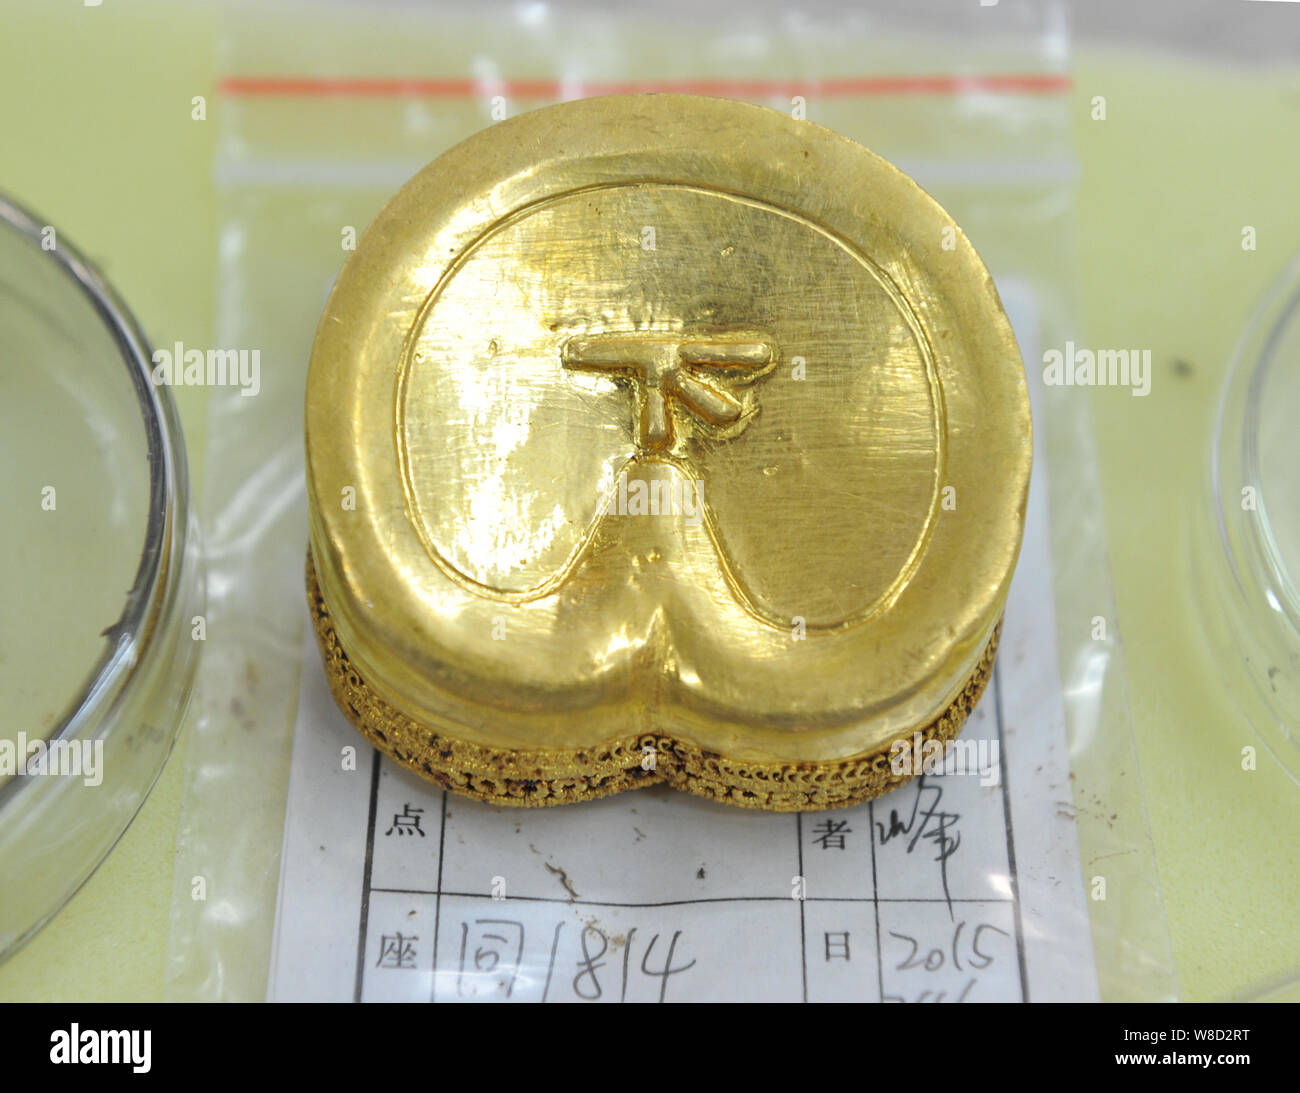 Ein Huf-förmige Goldbarren mit einem chinesischen Zeichen 'Xia", also 'Down' in Englisch, aus dem Grab des "Haihunhou" (Marquis von Haihun) zurückgehend auf. Stockfoto